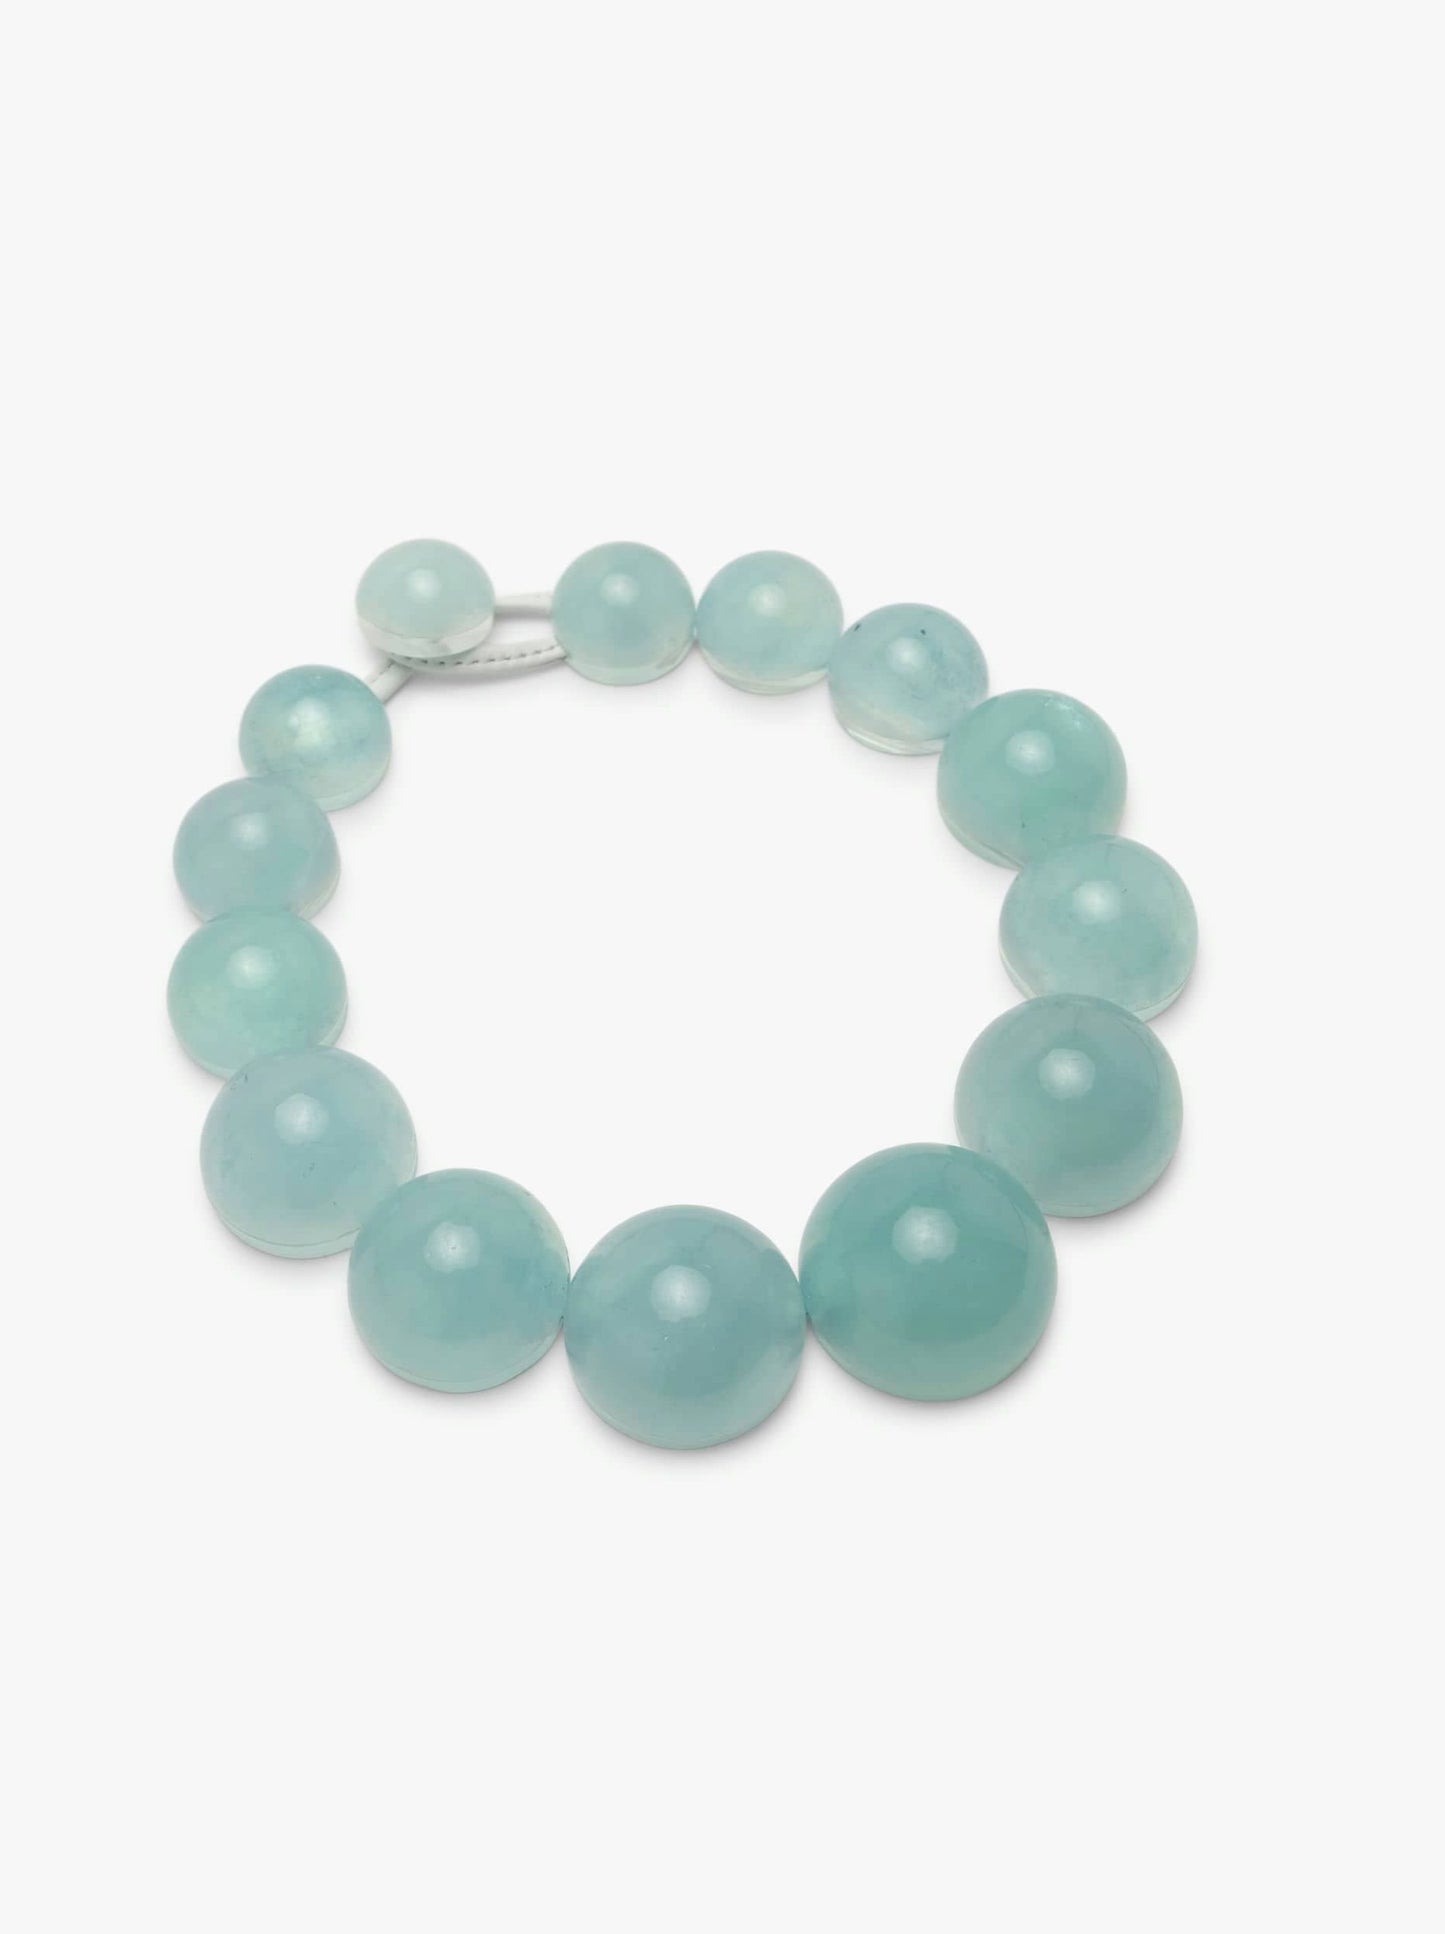 Necklace: aquamarine, acrylic